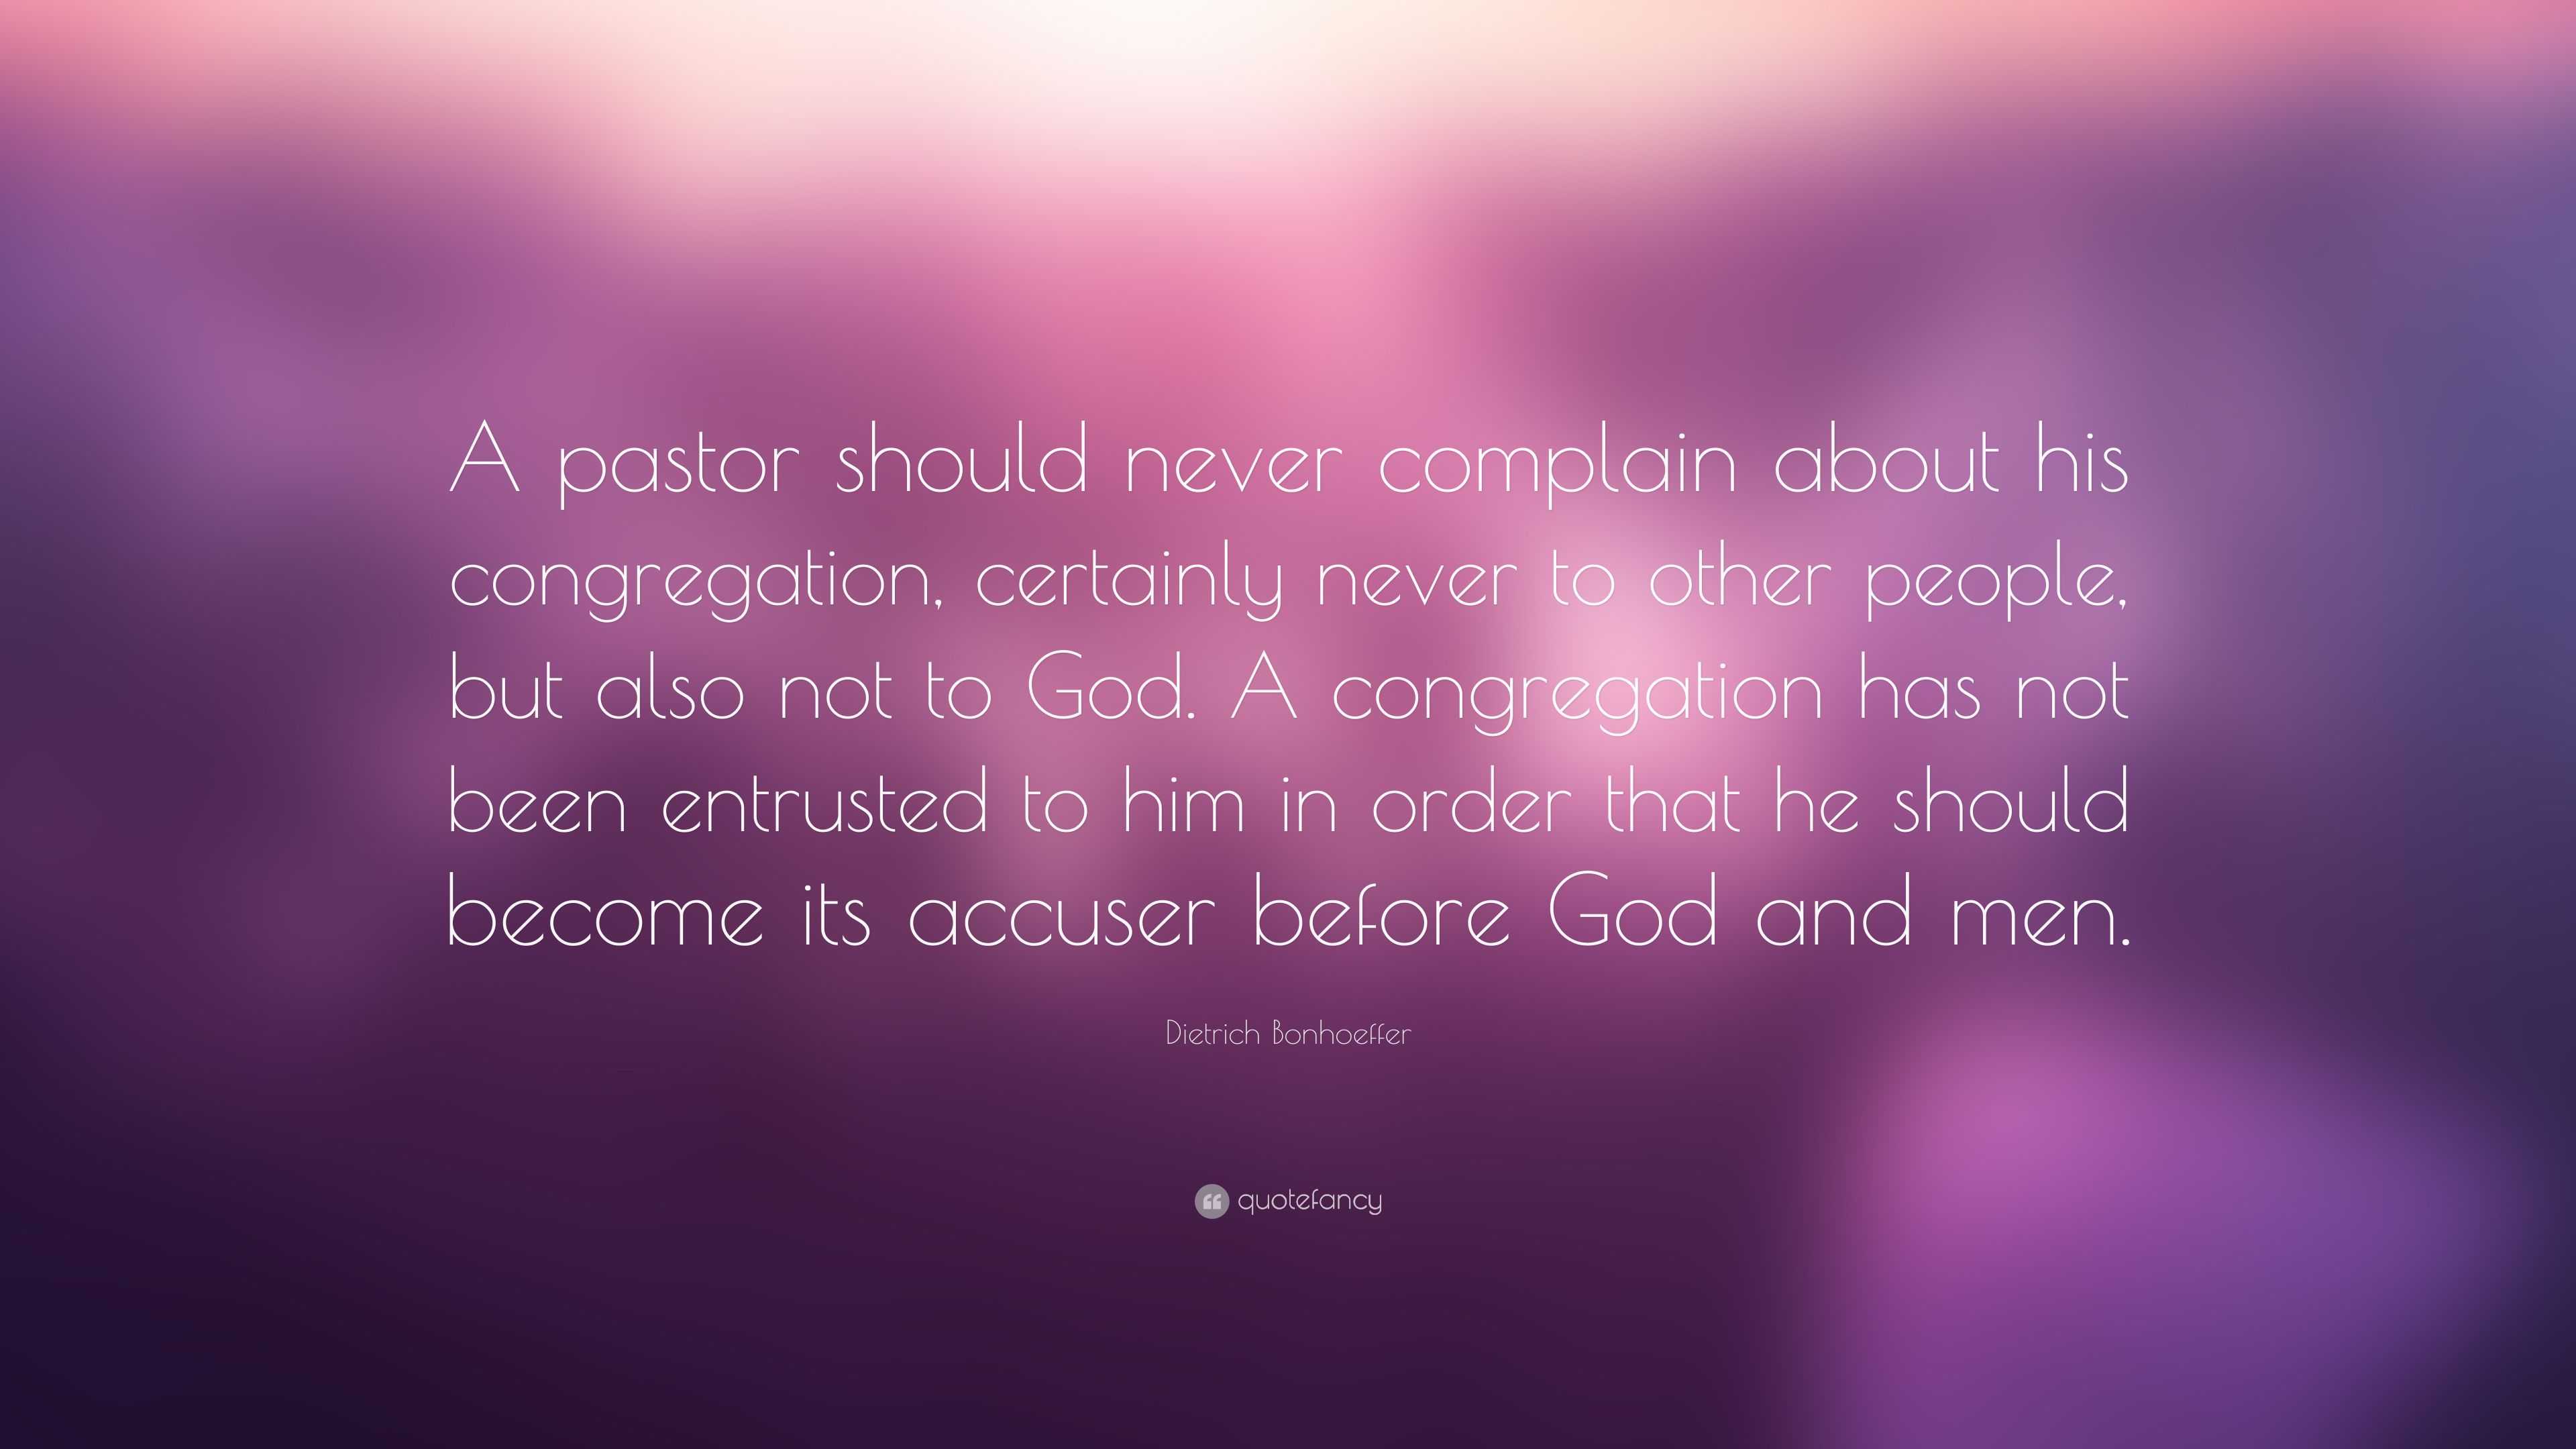 Dietrich Bonhoeffer Quote: “A pastor should never complain about his ...